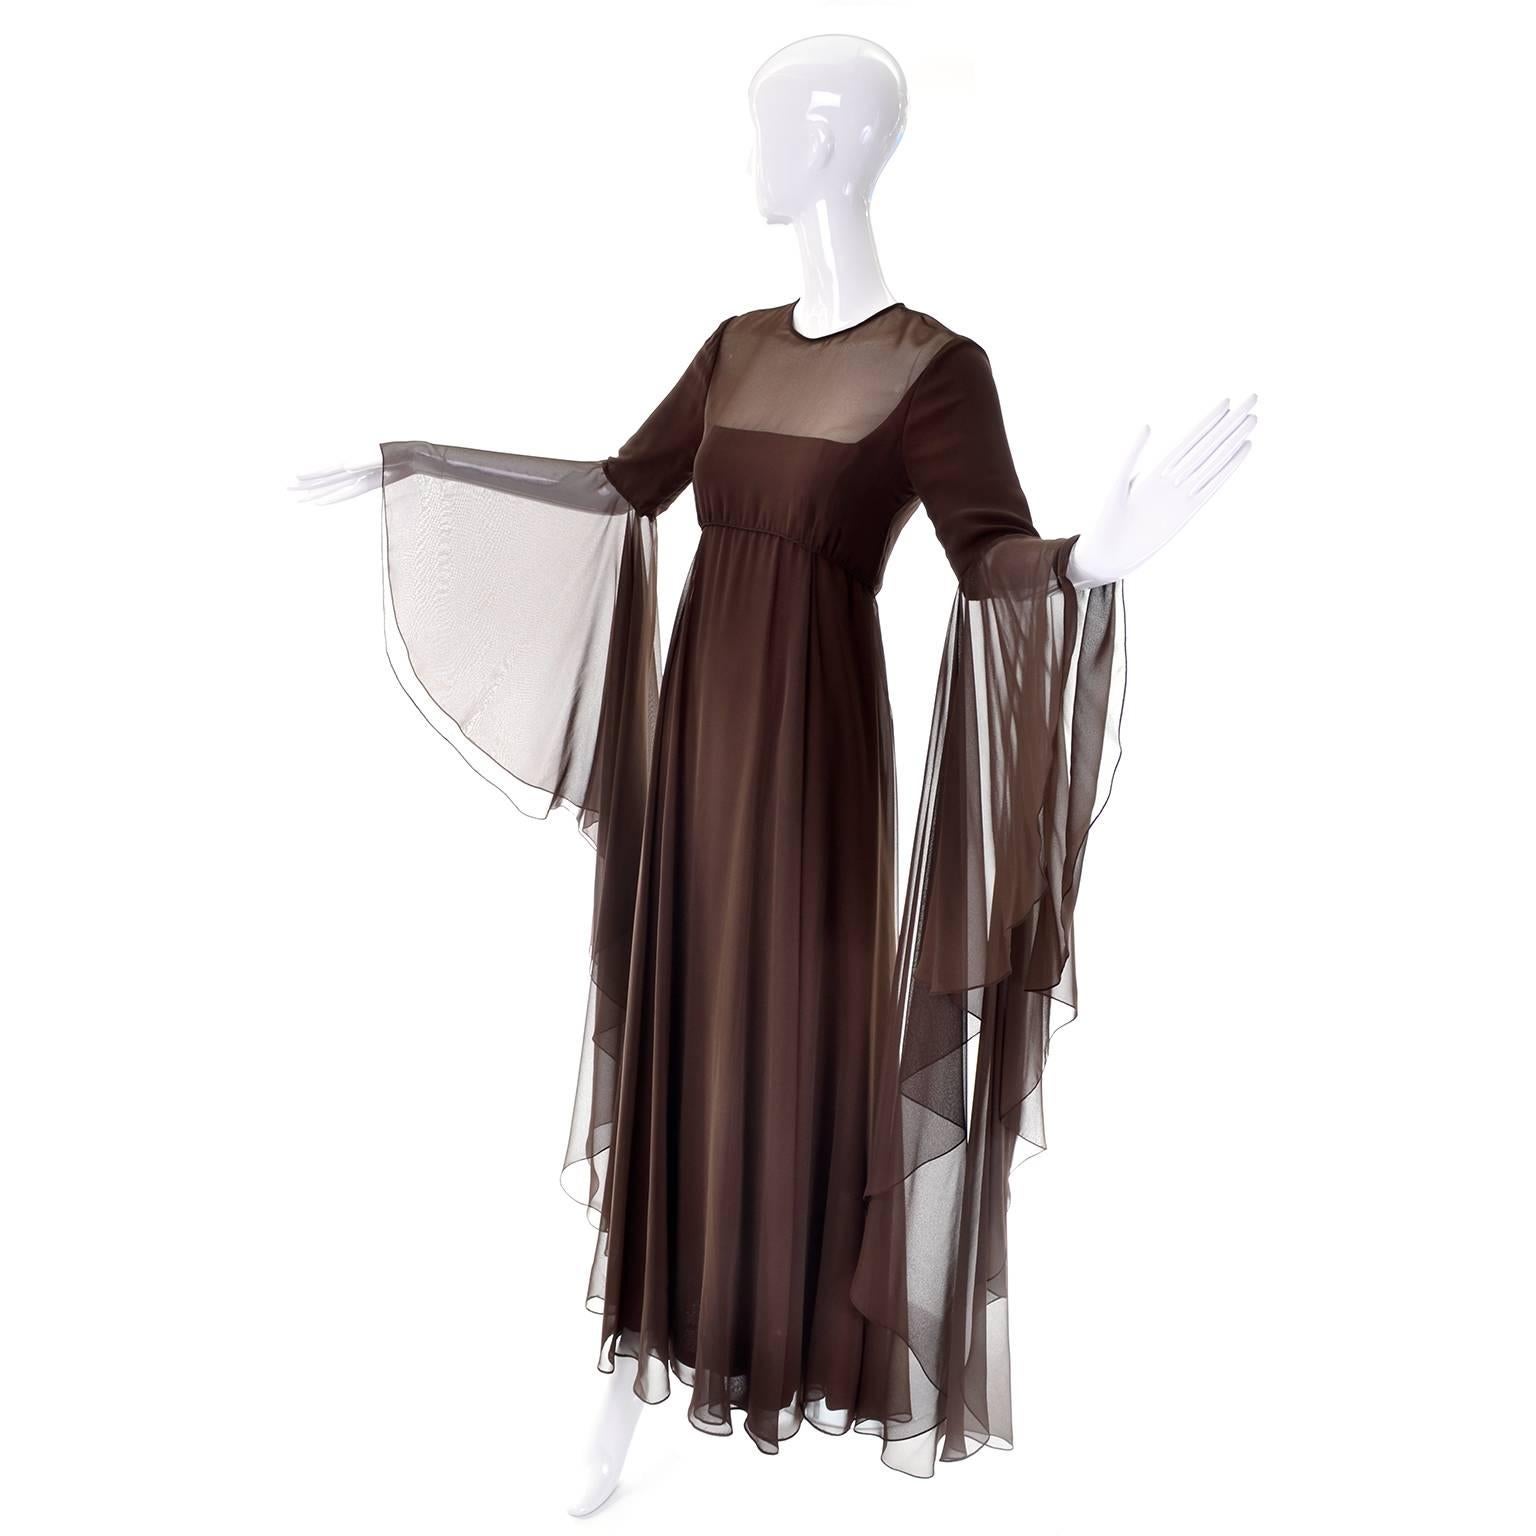 Dies ist ein hervorragendes braunes Vintage-Abendkleid aus Chiffon von Estevez für den Eva Gabor Look. Dieses bodenlange Kleid hat dramatische Statement-Ärmel, die bis zum Ellbogen gefüttert sind.  Die Ärmel reichen fast bis zum Boden!  Das Kleid